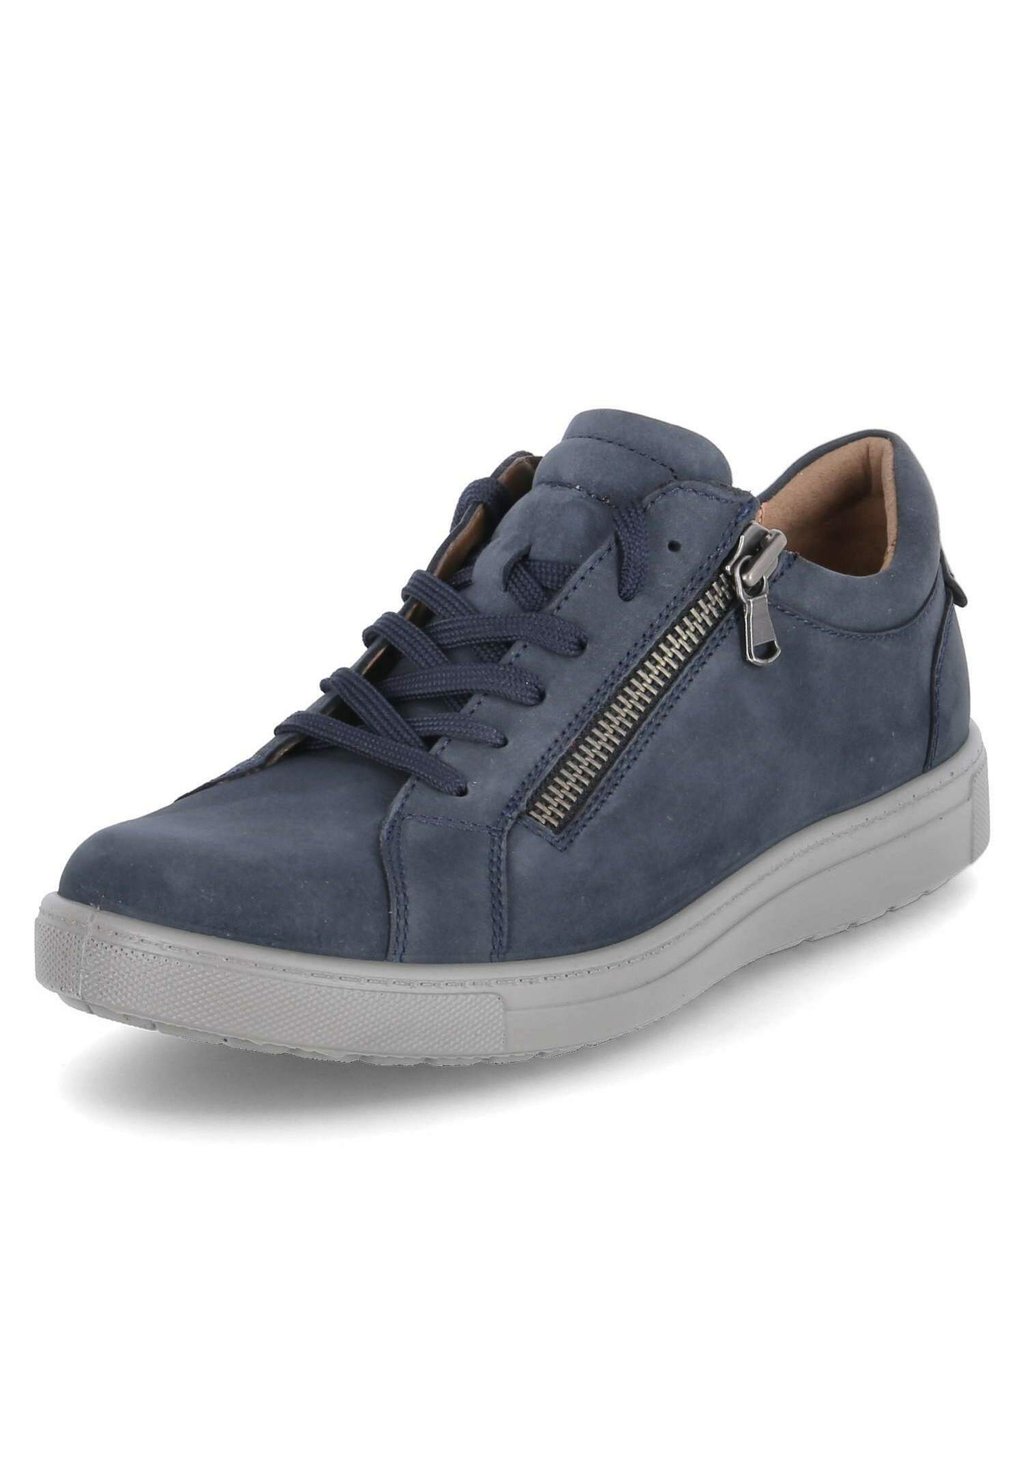 Спортивные туфли на шнуровке Jomos, цвет blau